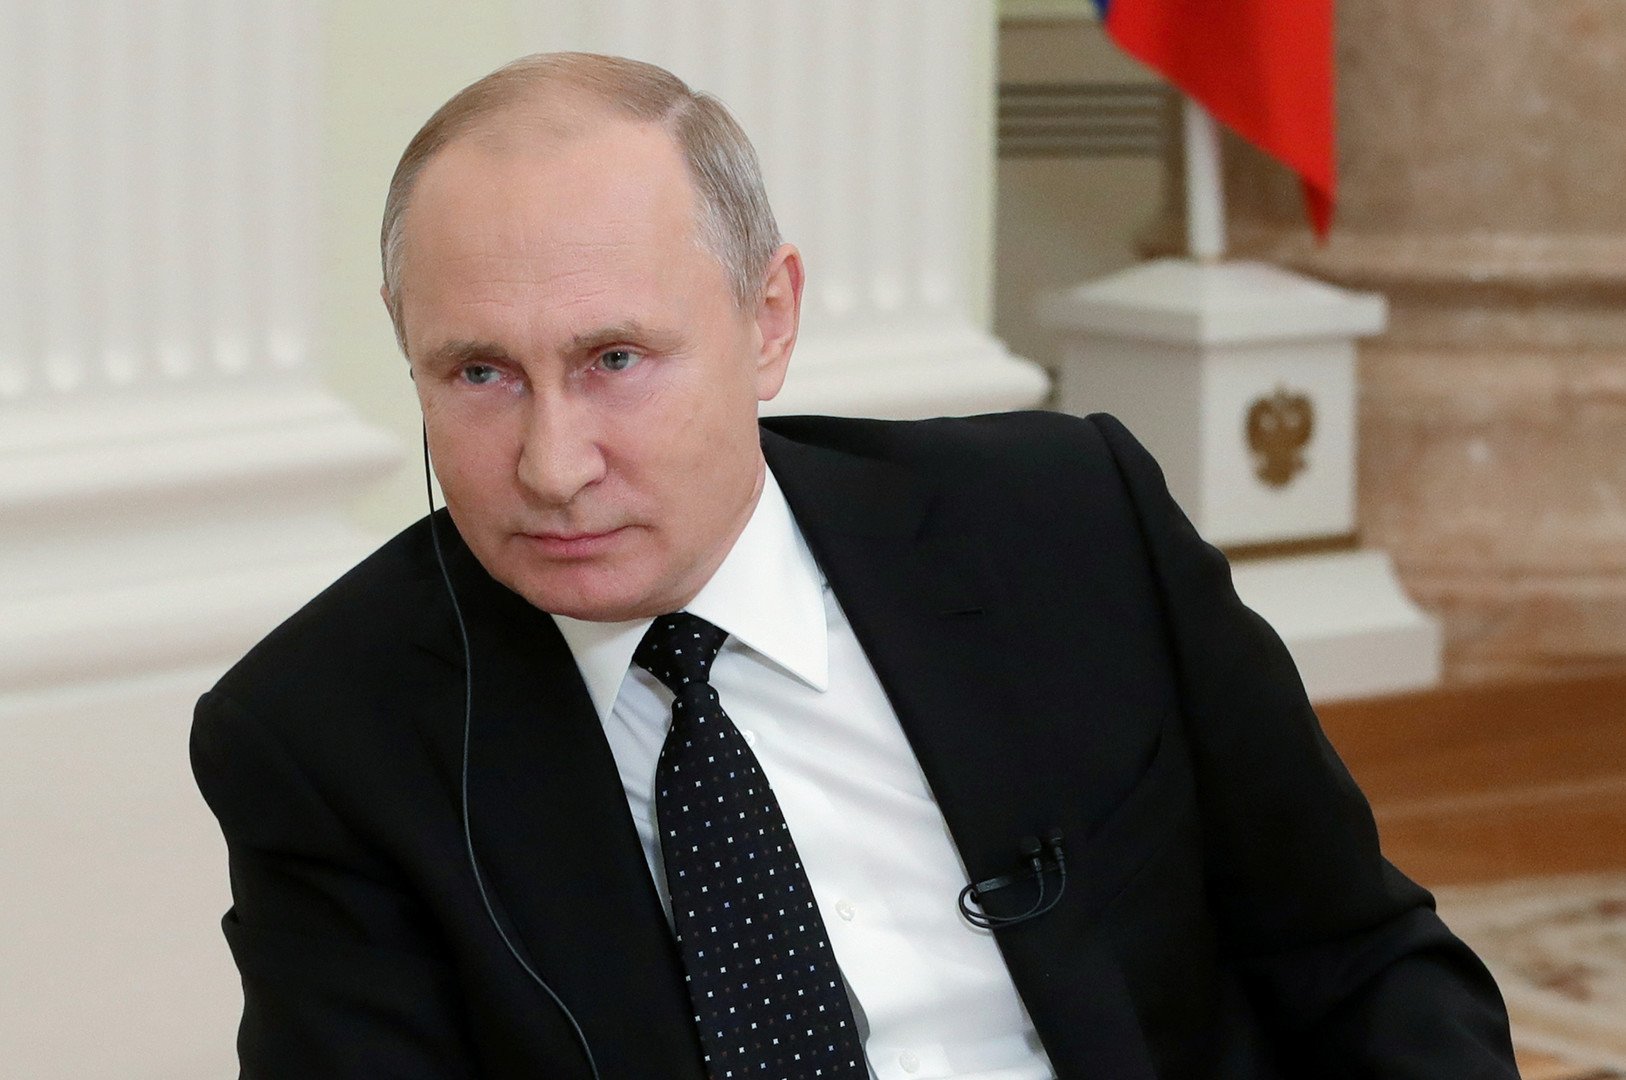 بوتين يتحدث عن تداعيات قراره التدخل في سوريا وموقفه من بقاء الأسد في السلطة